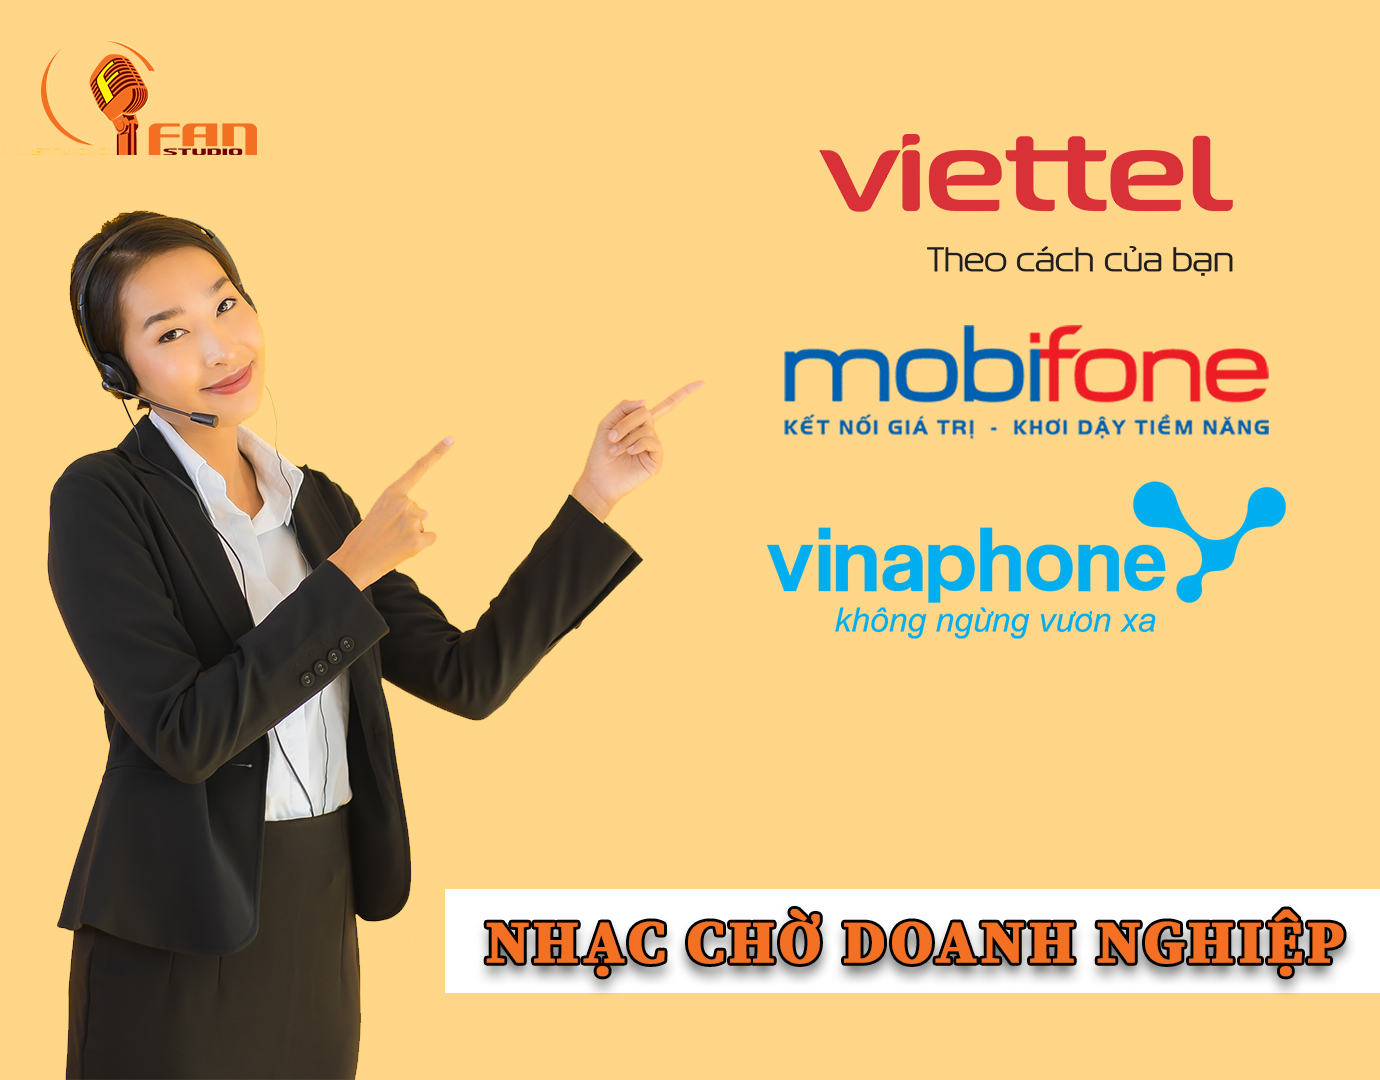 Nhạc chờ cho doanh nghiệp nhà mạng Viettel - Mobile - Vinaphone